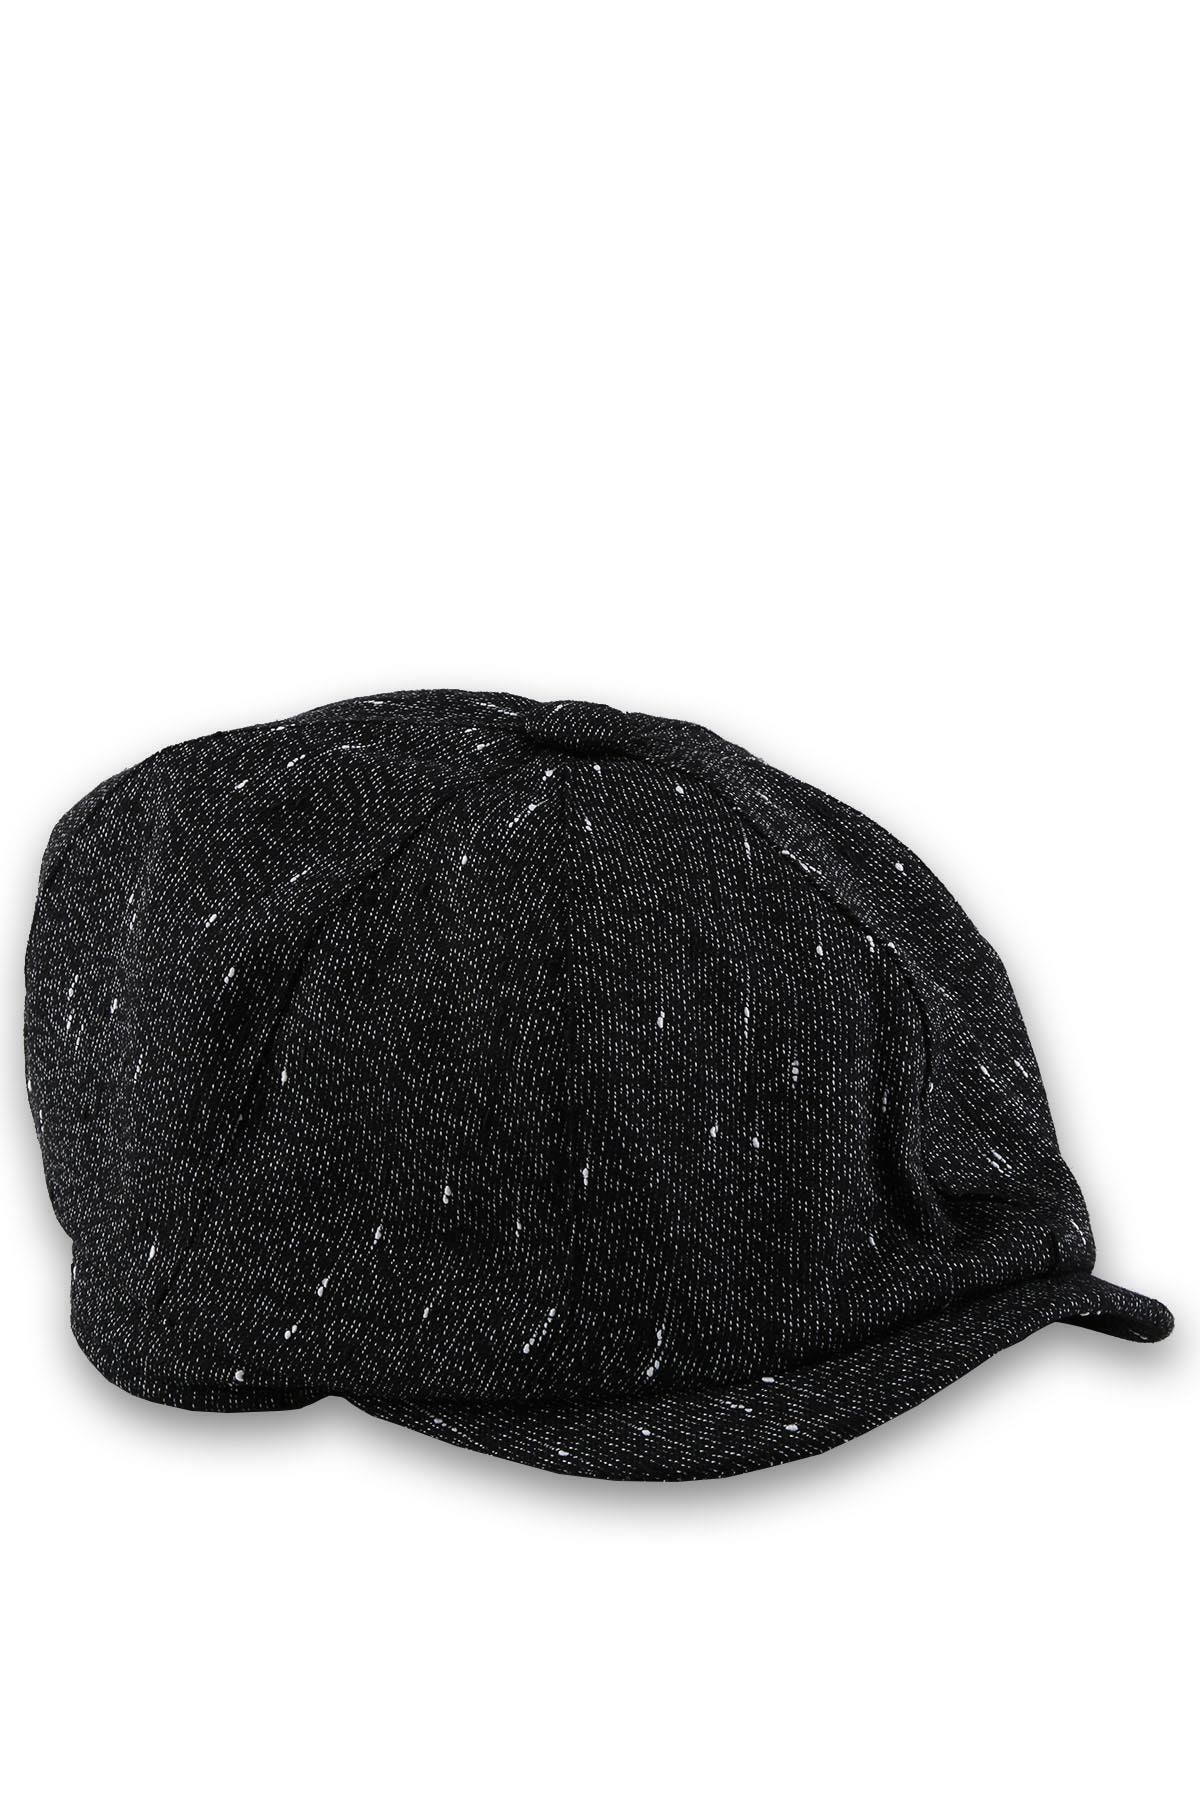 Kravatkolik Erkek  Siyah Yün Kasket Şapka Kst11